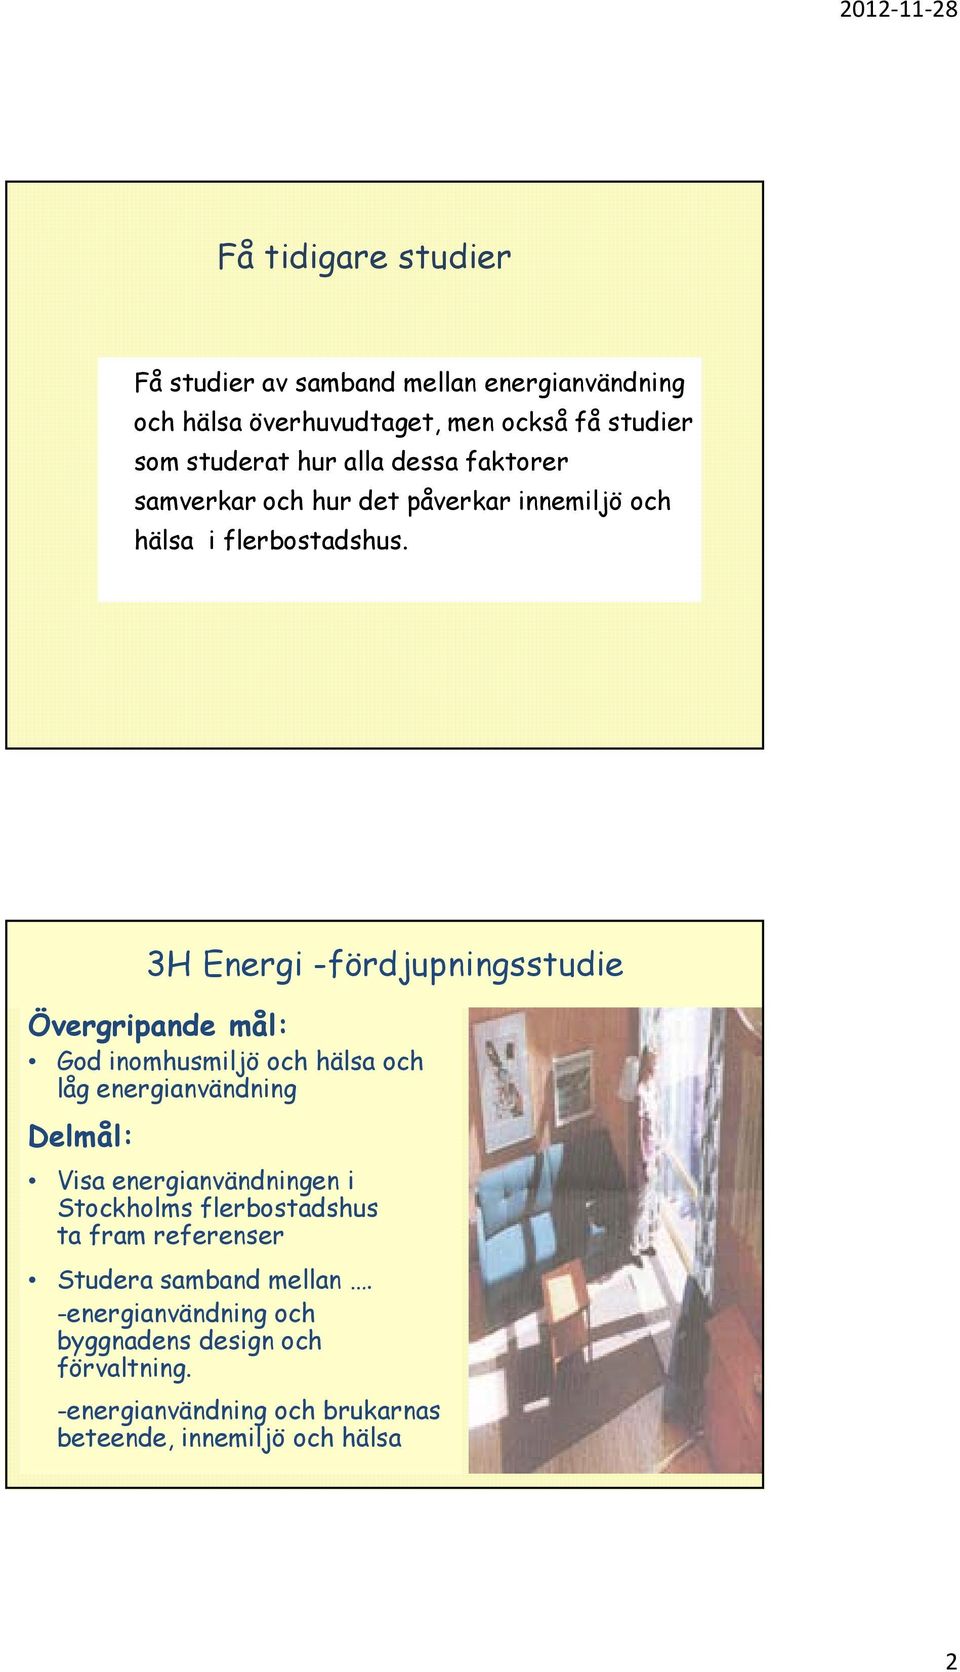 Övergripande mål: God inomhusmiljö och hälsa och låg energianvändning Delmål: 3H Energi -fördjupningsstudie Visa energianvändningen i